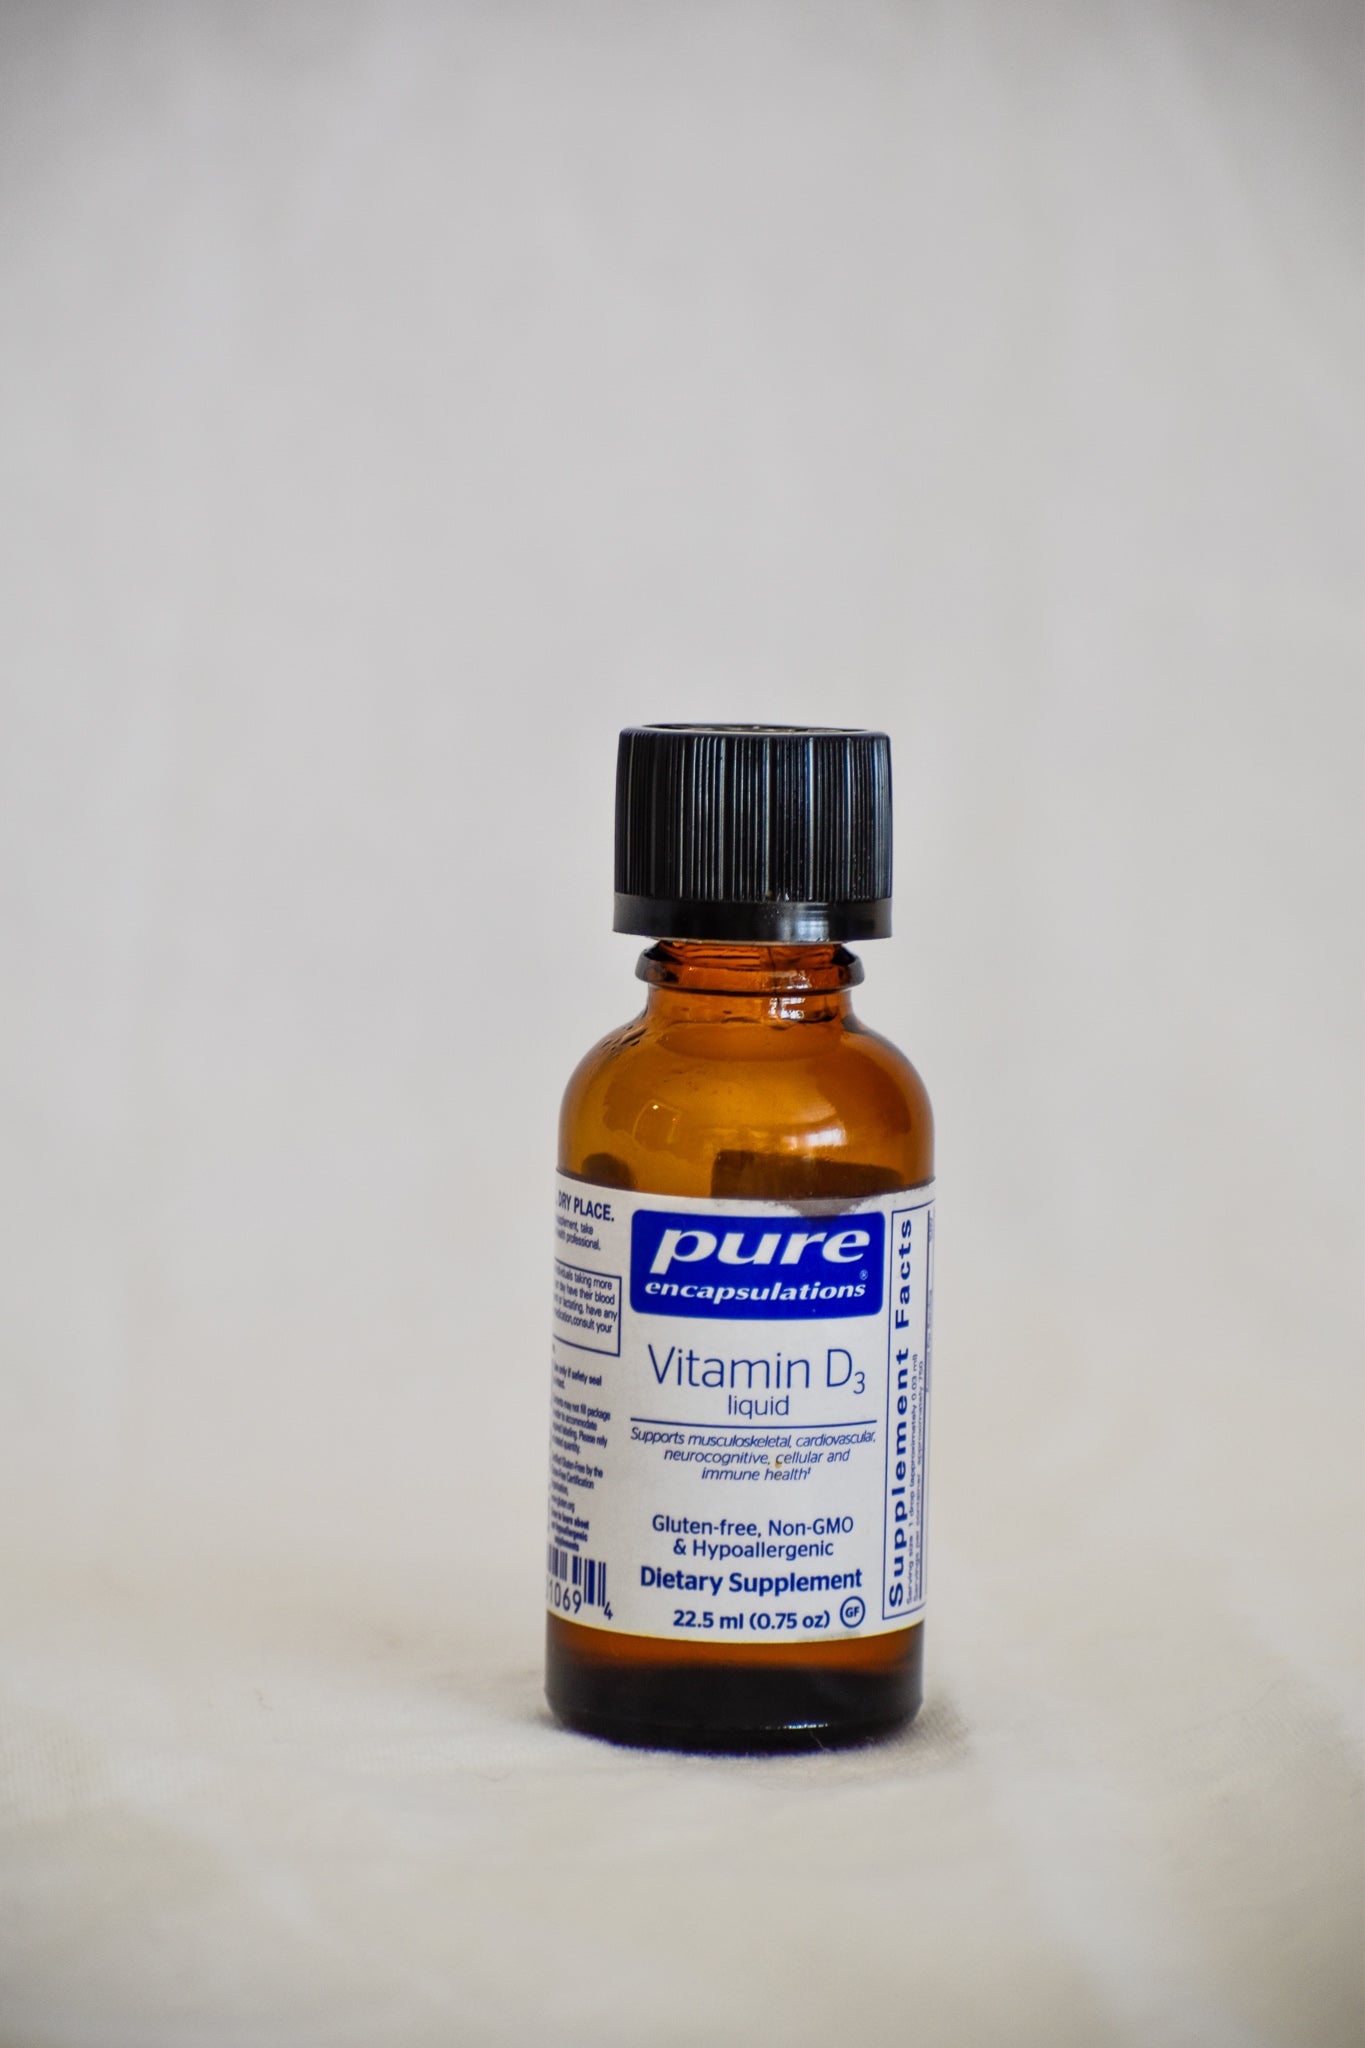 Vitamin D3 Liquid